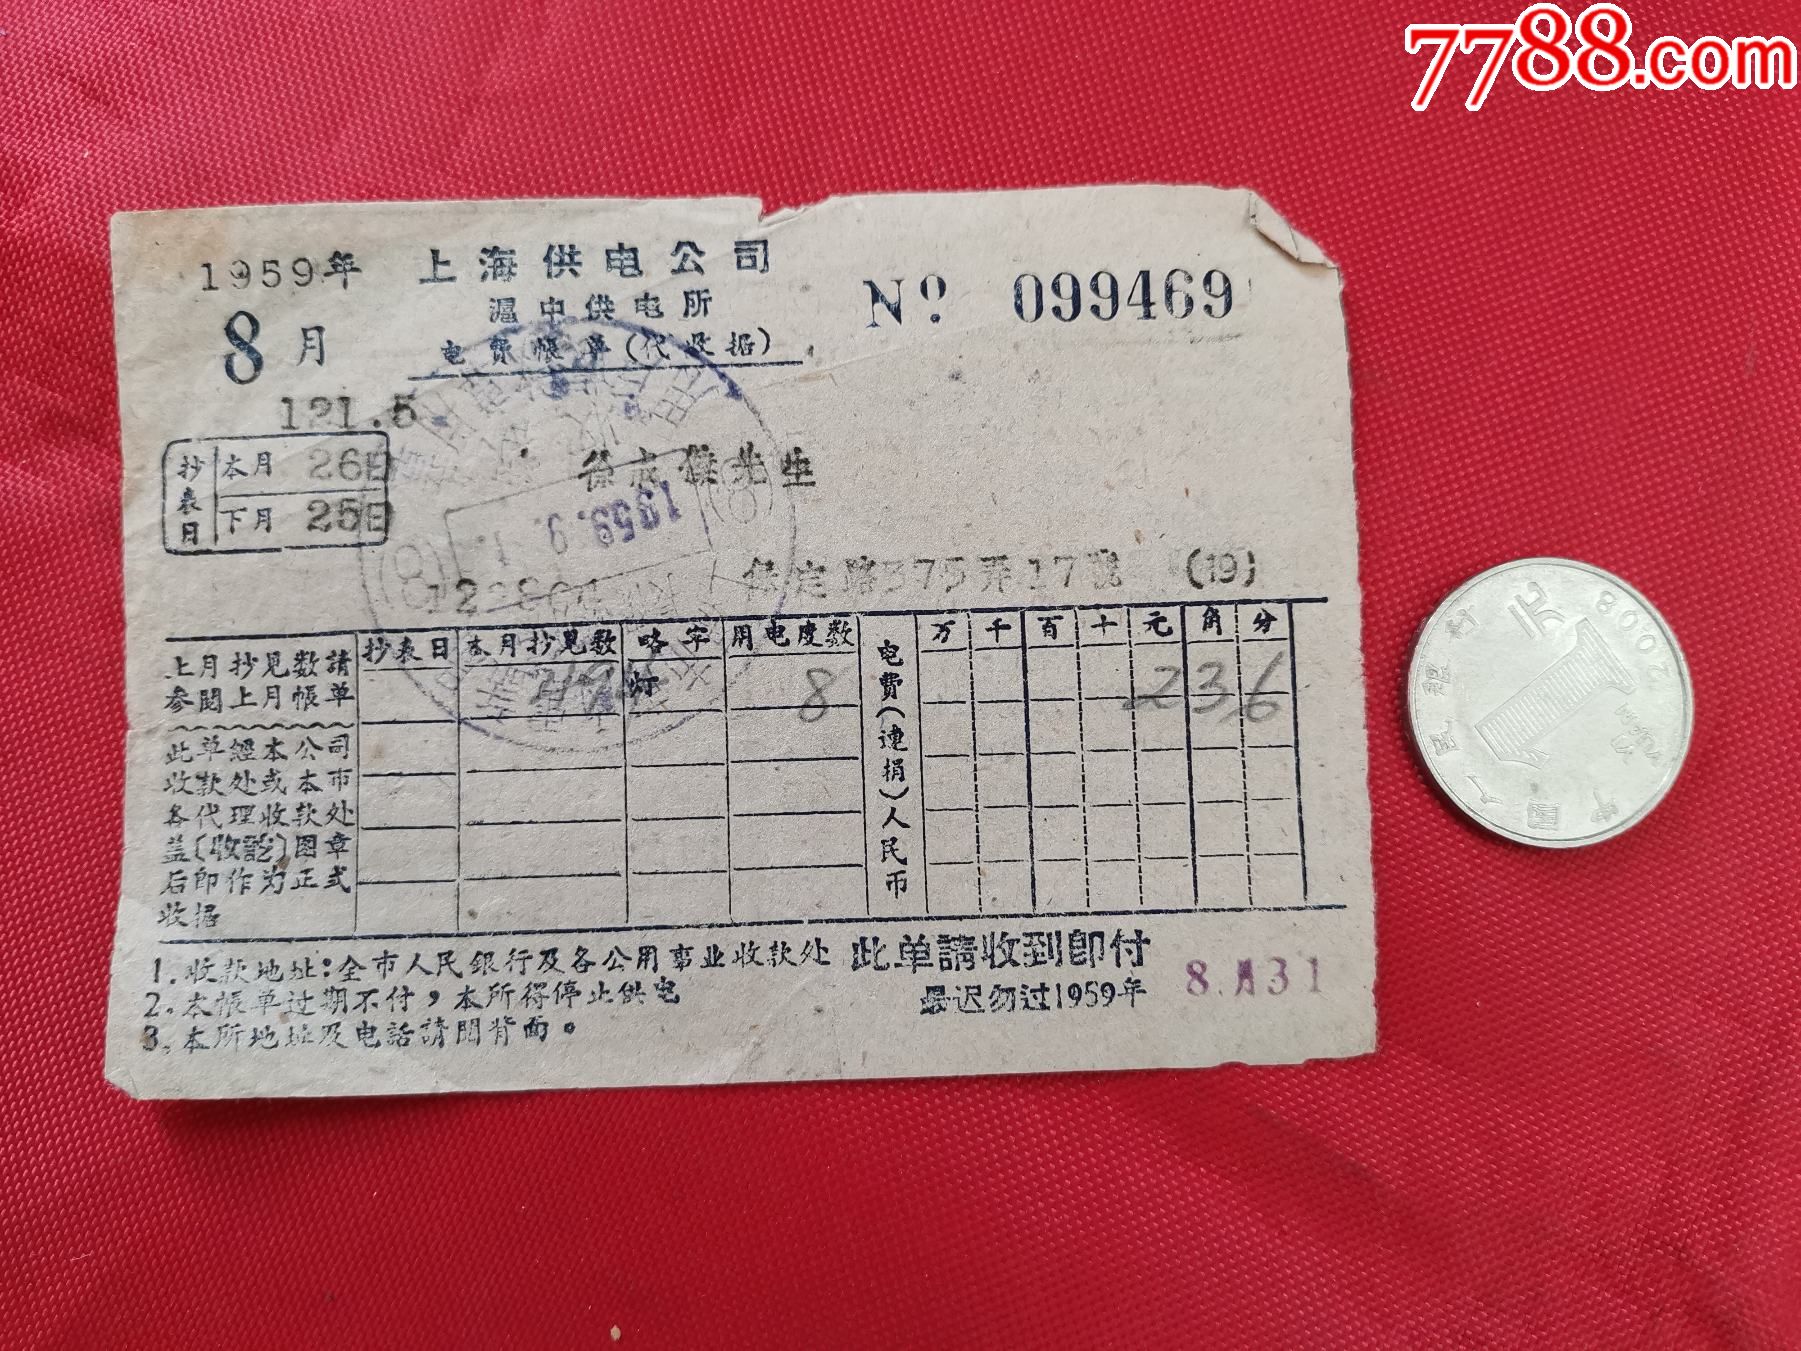 上海供电公司沪中供电所1959年8月份电费账单背面台汛期间注意用电